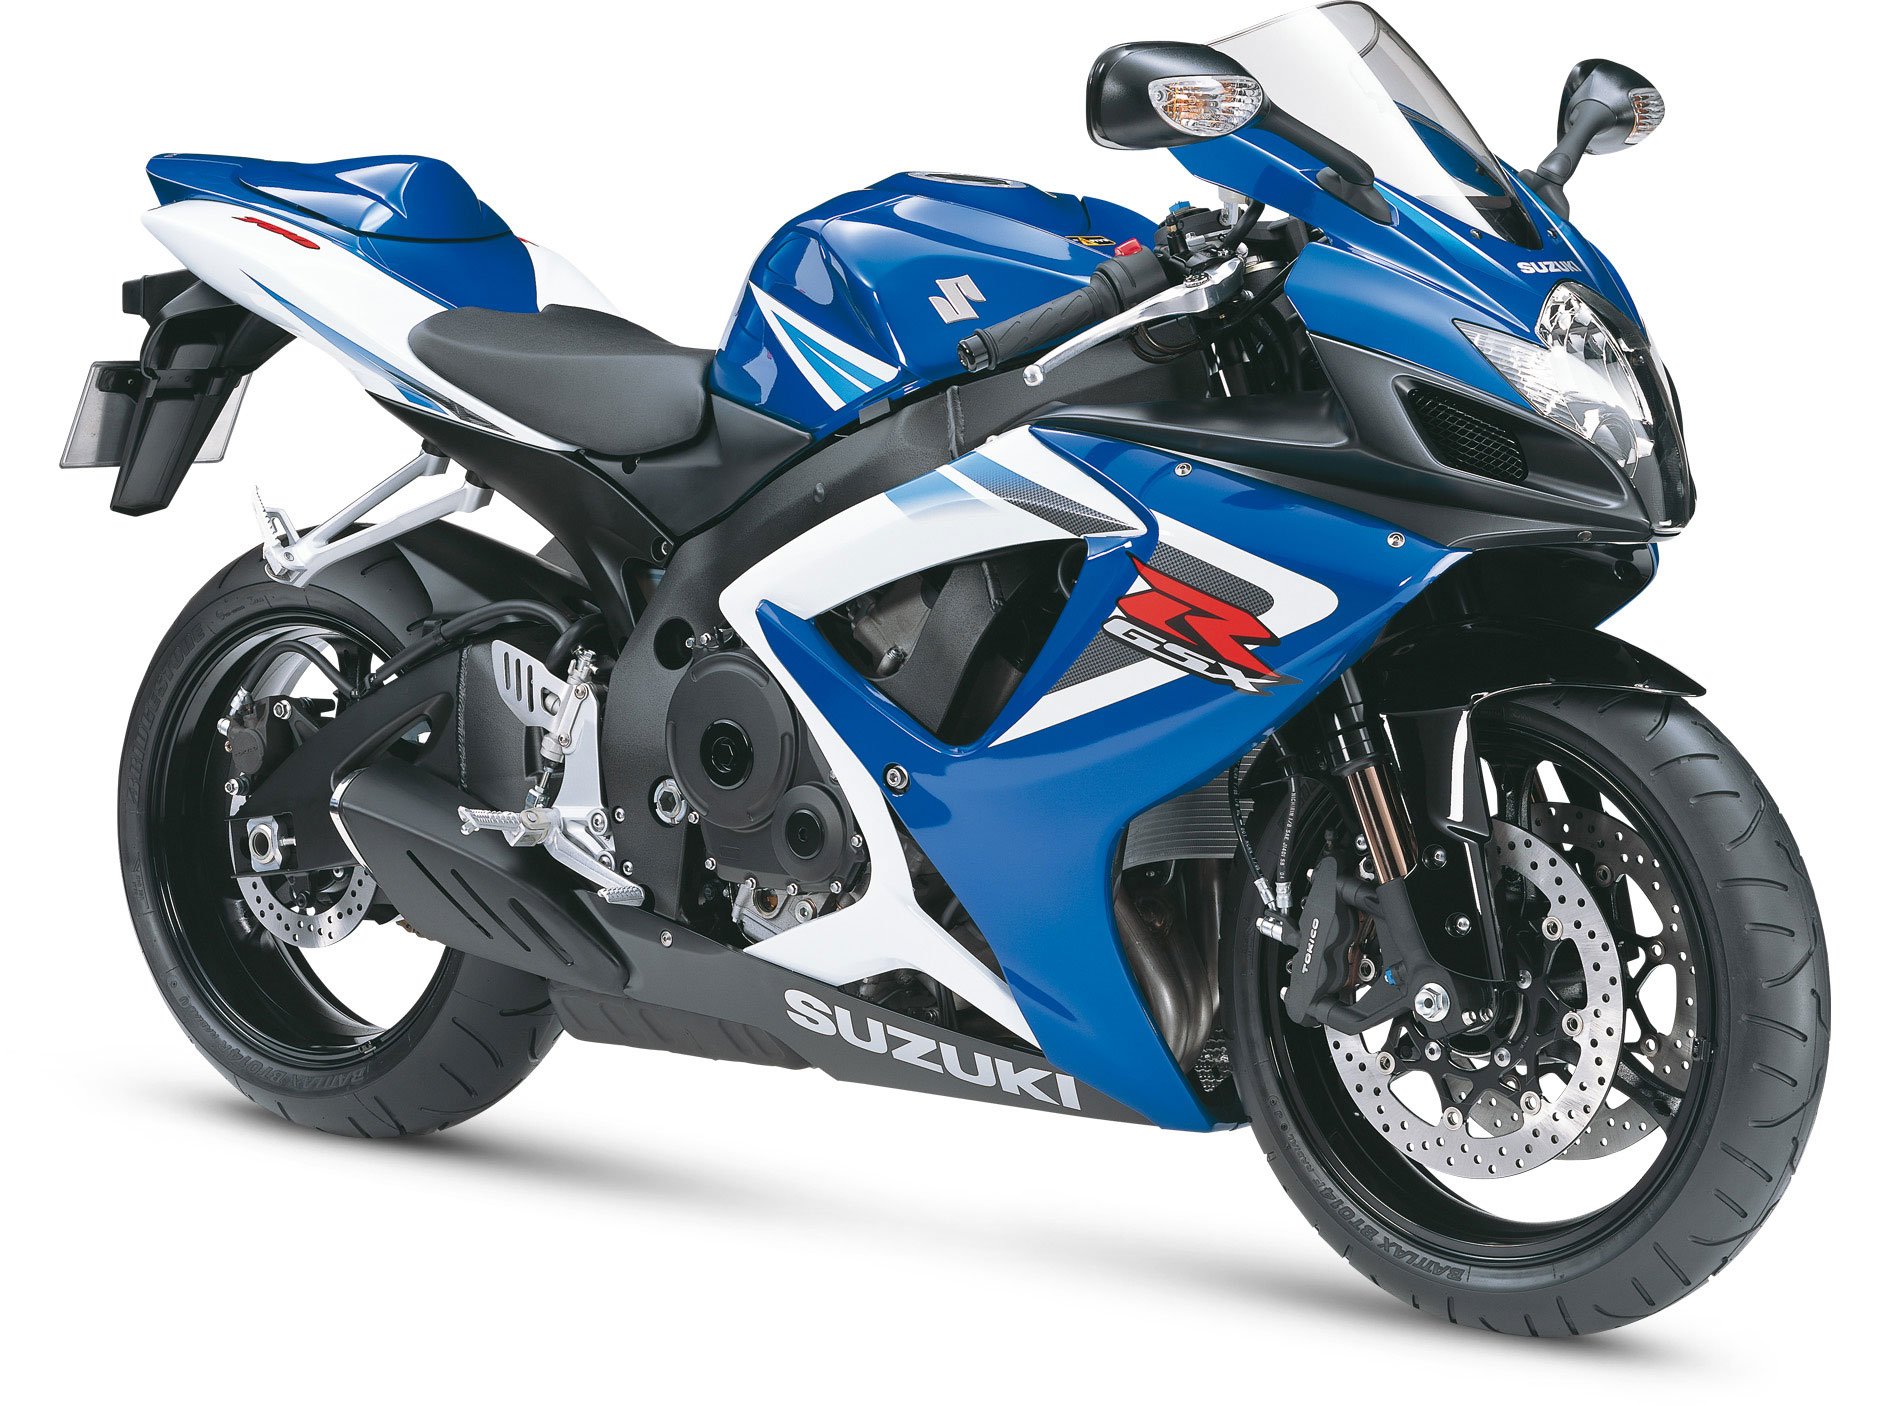 2006, Suzuki, Gsx r750, Motorcycles Wallpaper